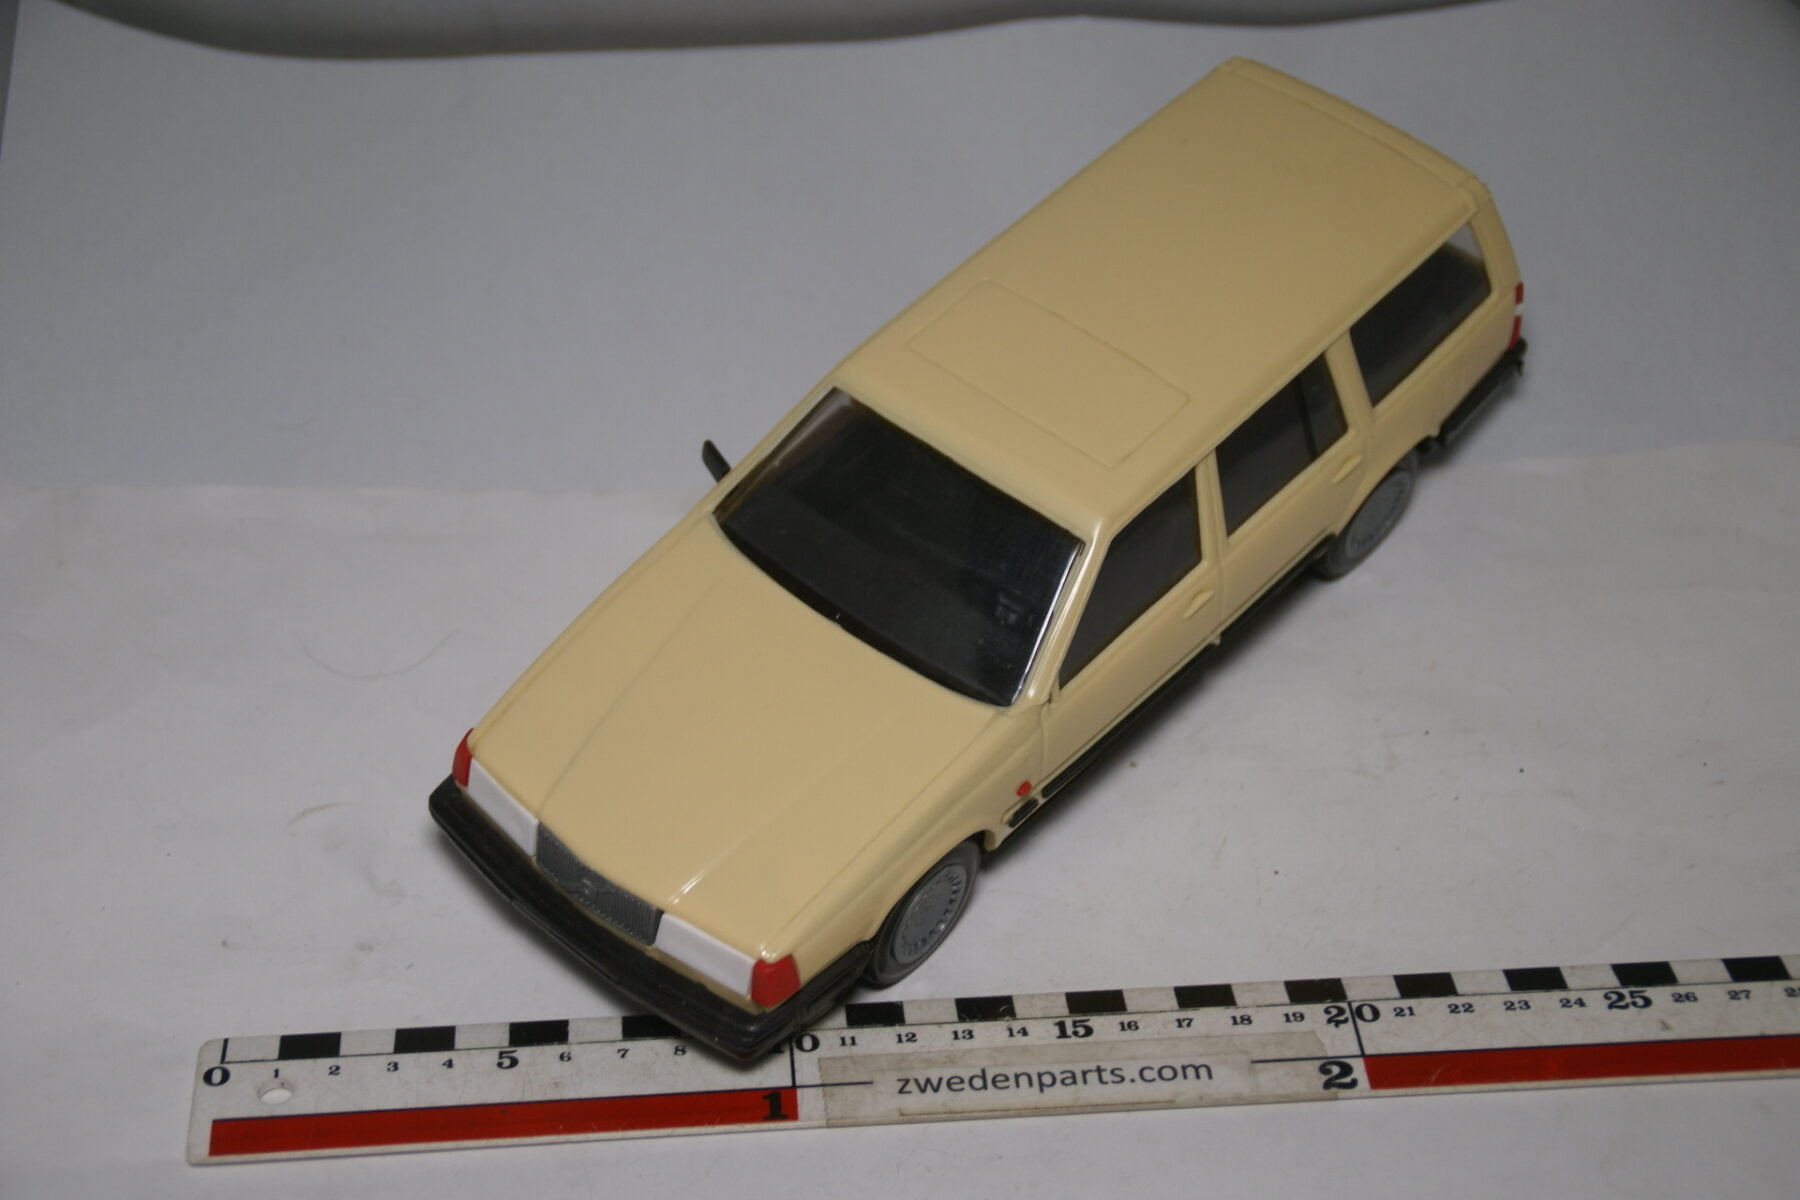 DSC09121 miniatuur Stahlberg Made in Finland Volvo 760GLE beige ca 1 op 18 losse spiegel